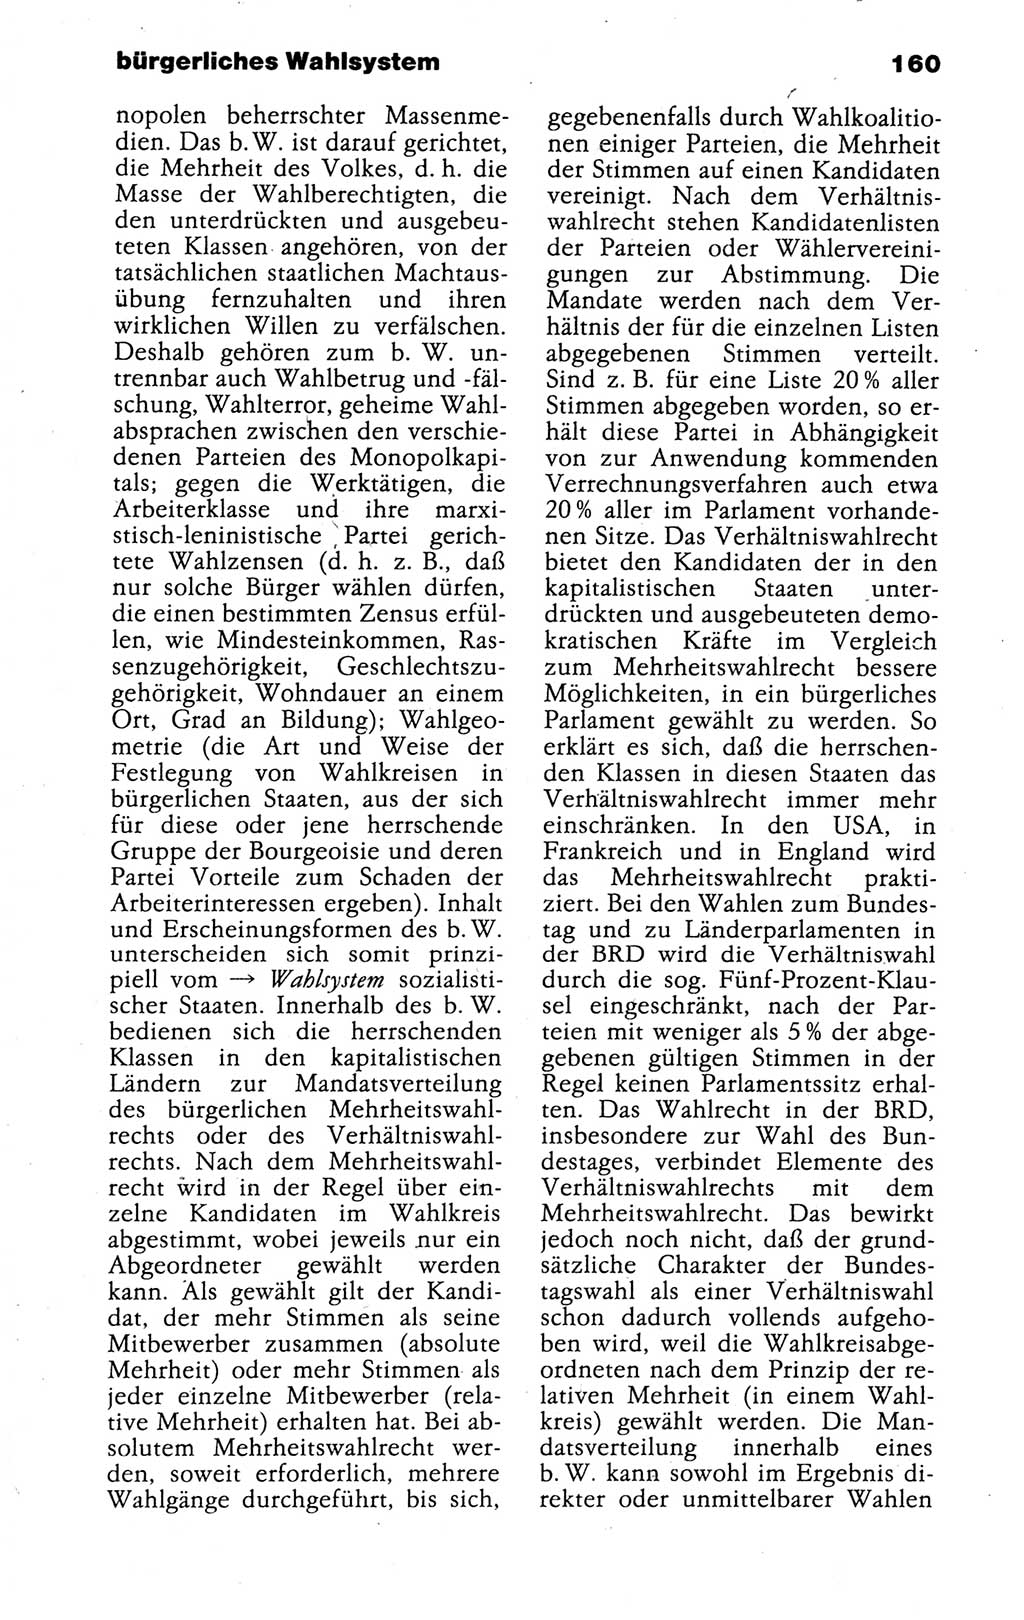 Kleines politisches Wörterbuch [Deutsche Demokratische Republik (DDR)] 1988, Seite 160 (Kl. pol. Wb. DDR 1988, S. 160)